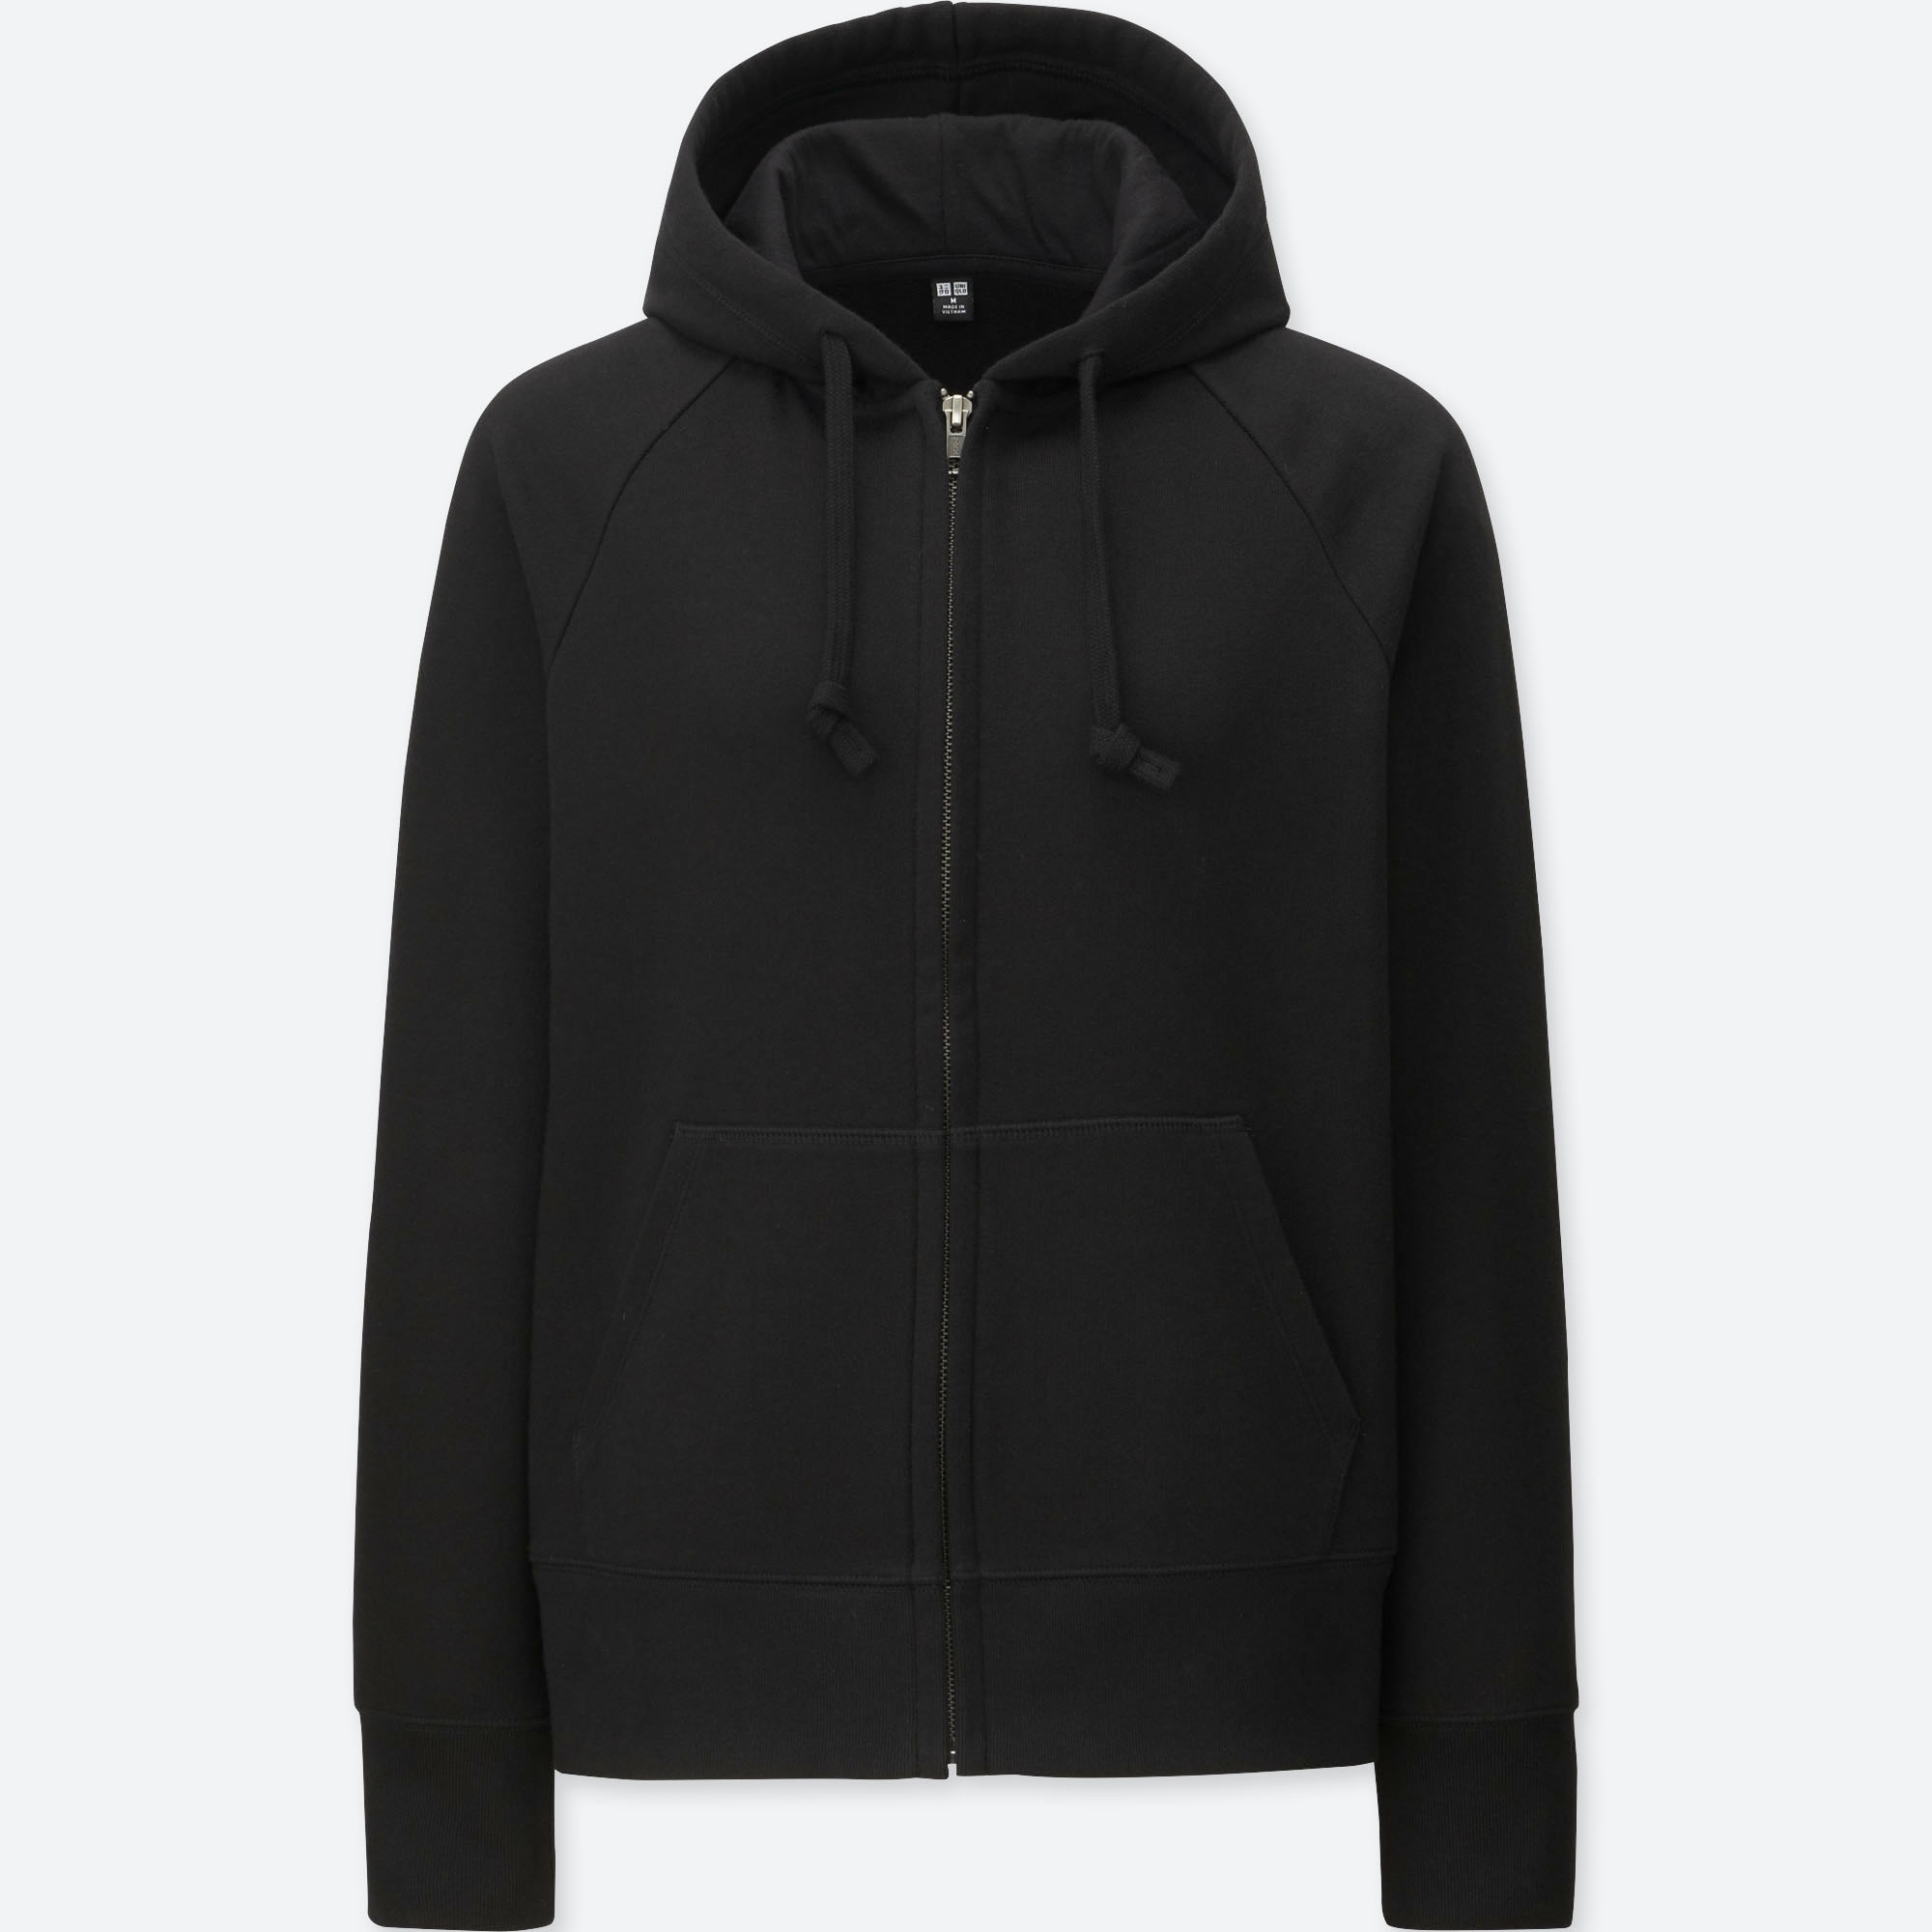 black zip hoodie